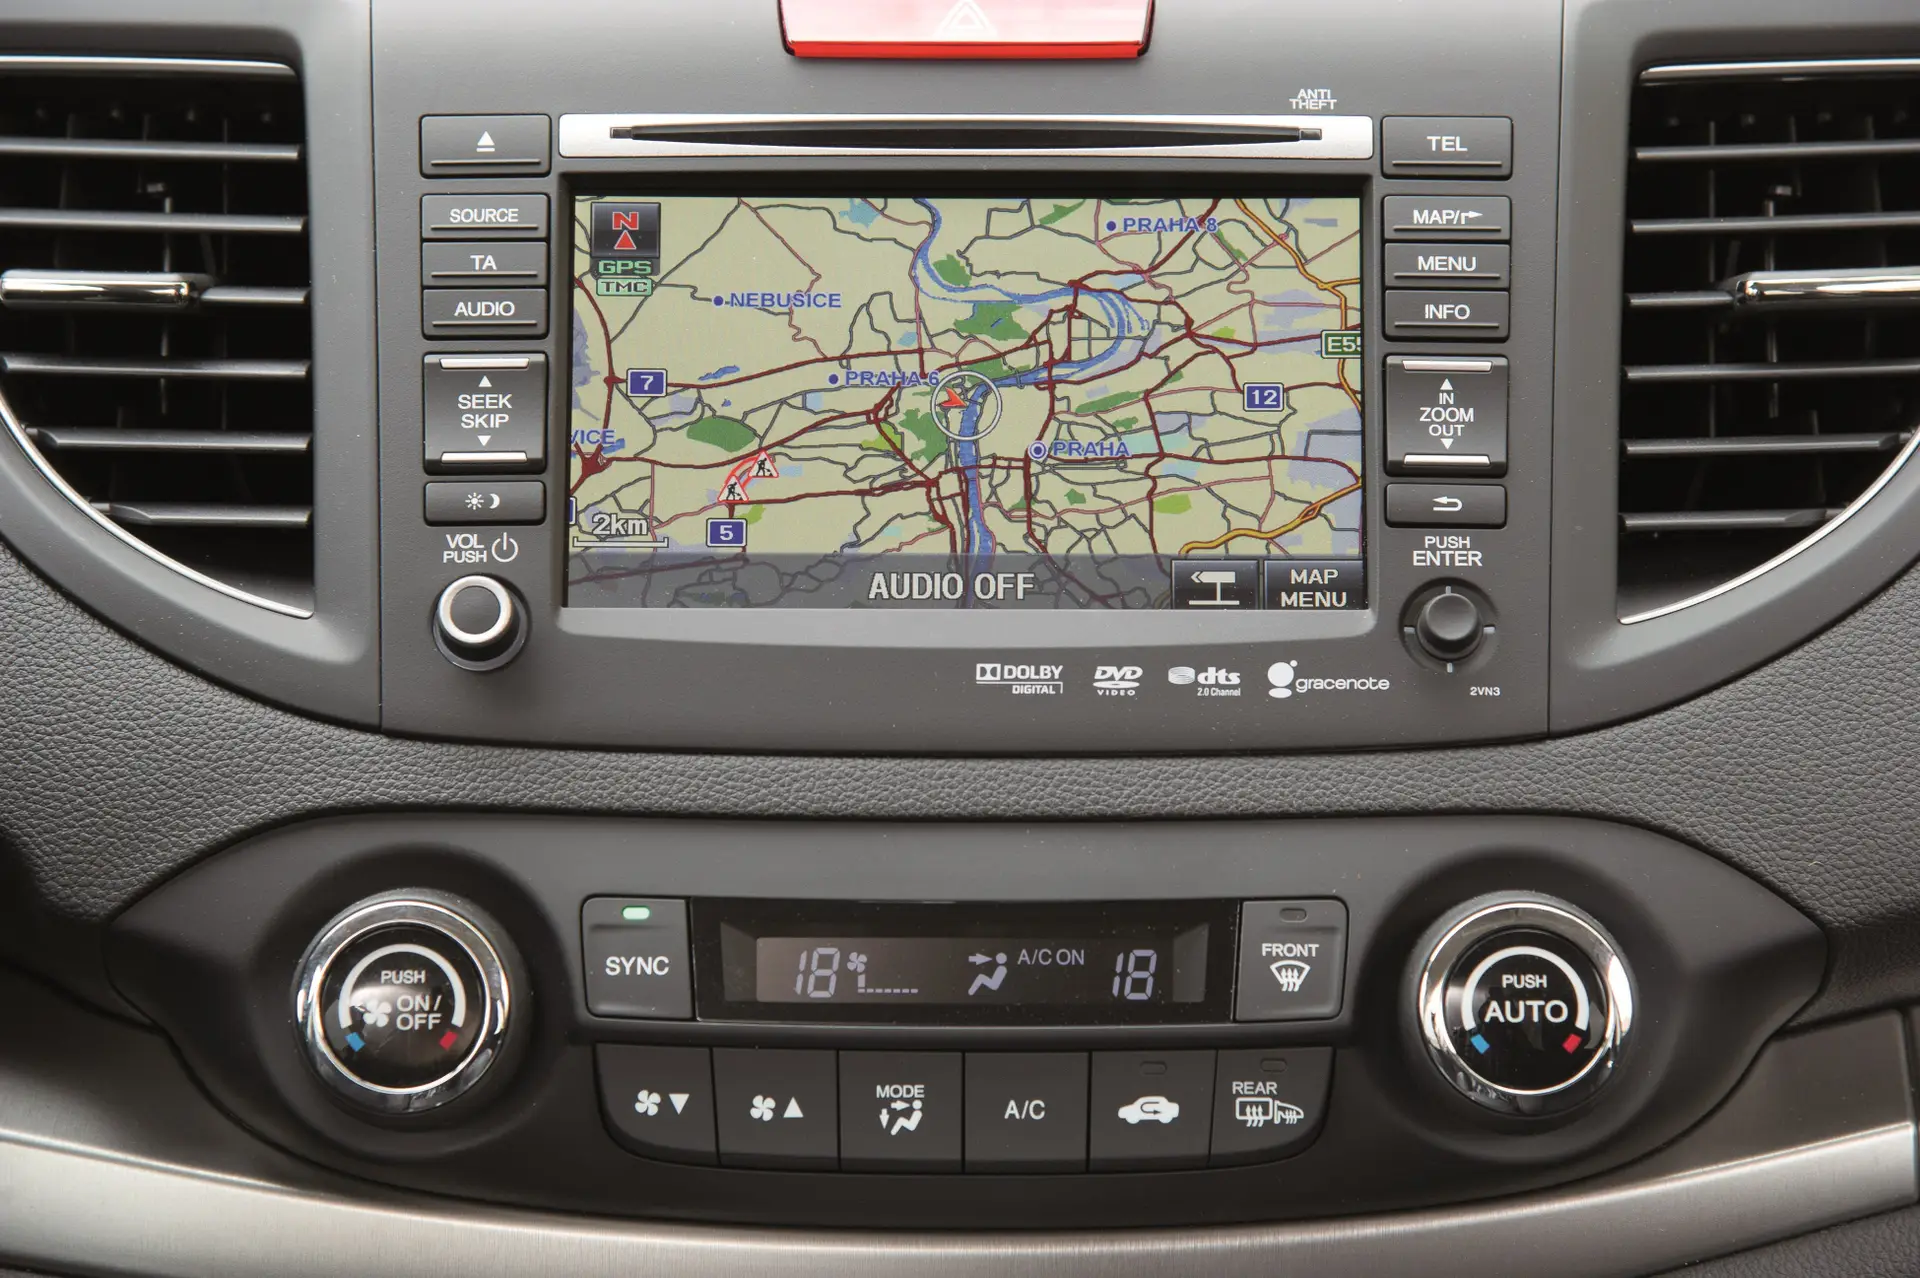 Honda CR-V (2012-2018) Review: interior close up photo of the Honda CR-V infotainment